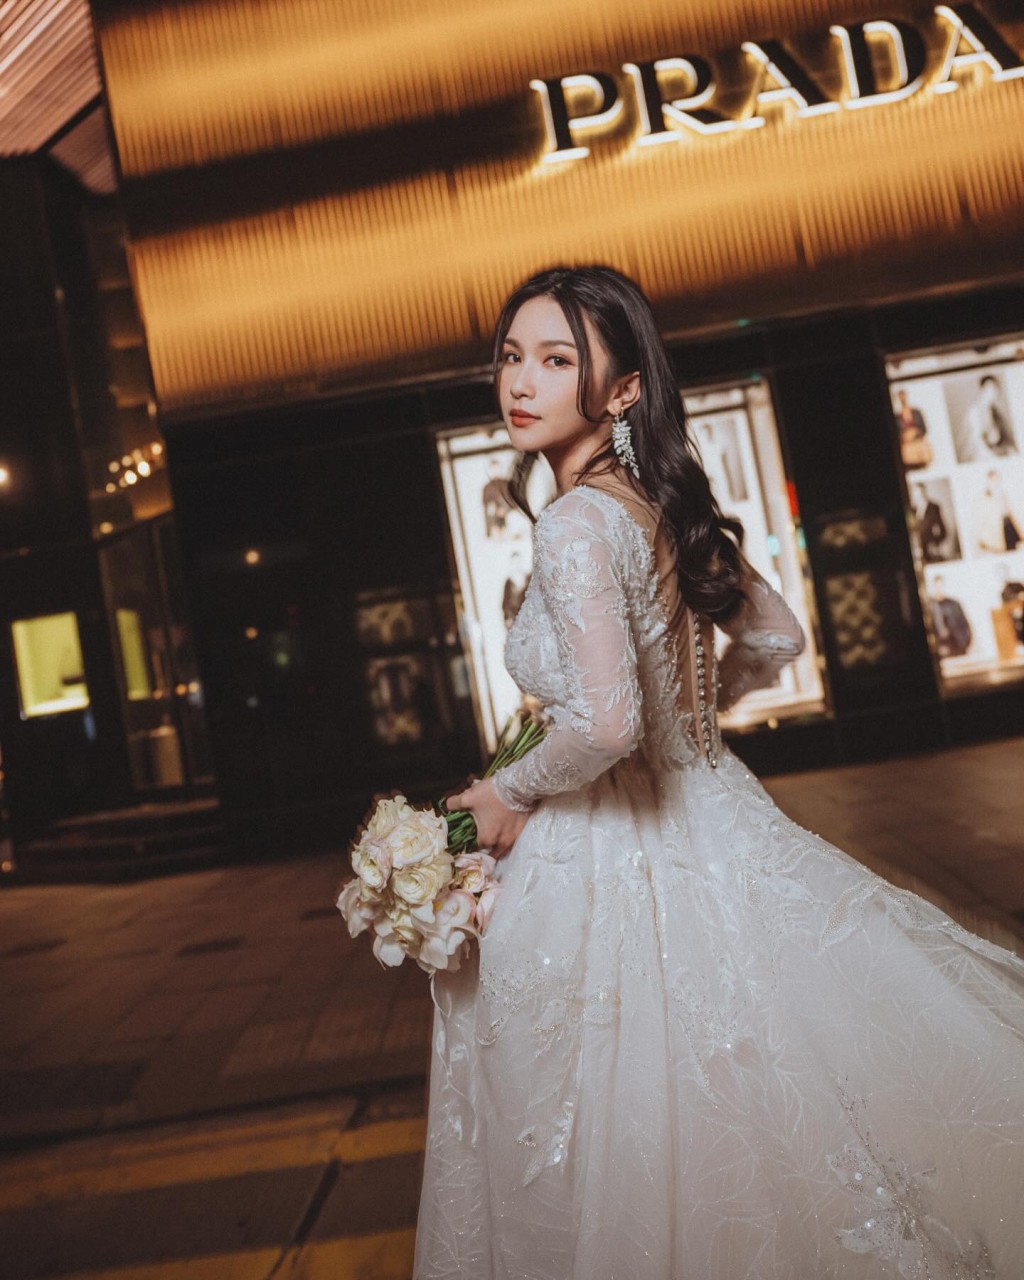 關楓馨穿白色長袖喱士拖尾婚紗，在疑似中環街頭取景拍攝。